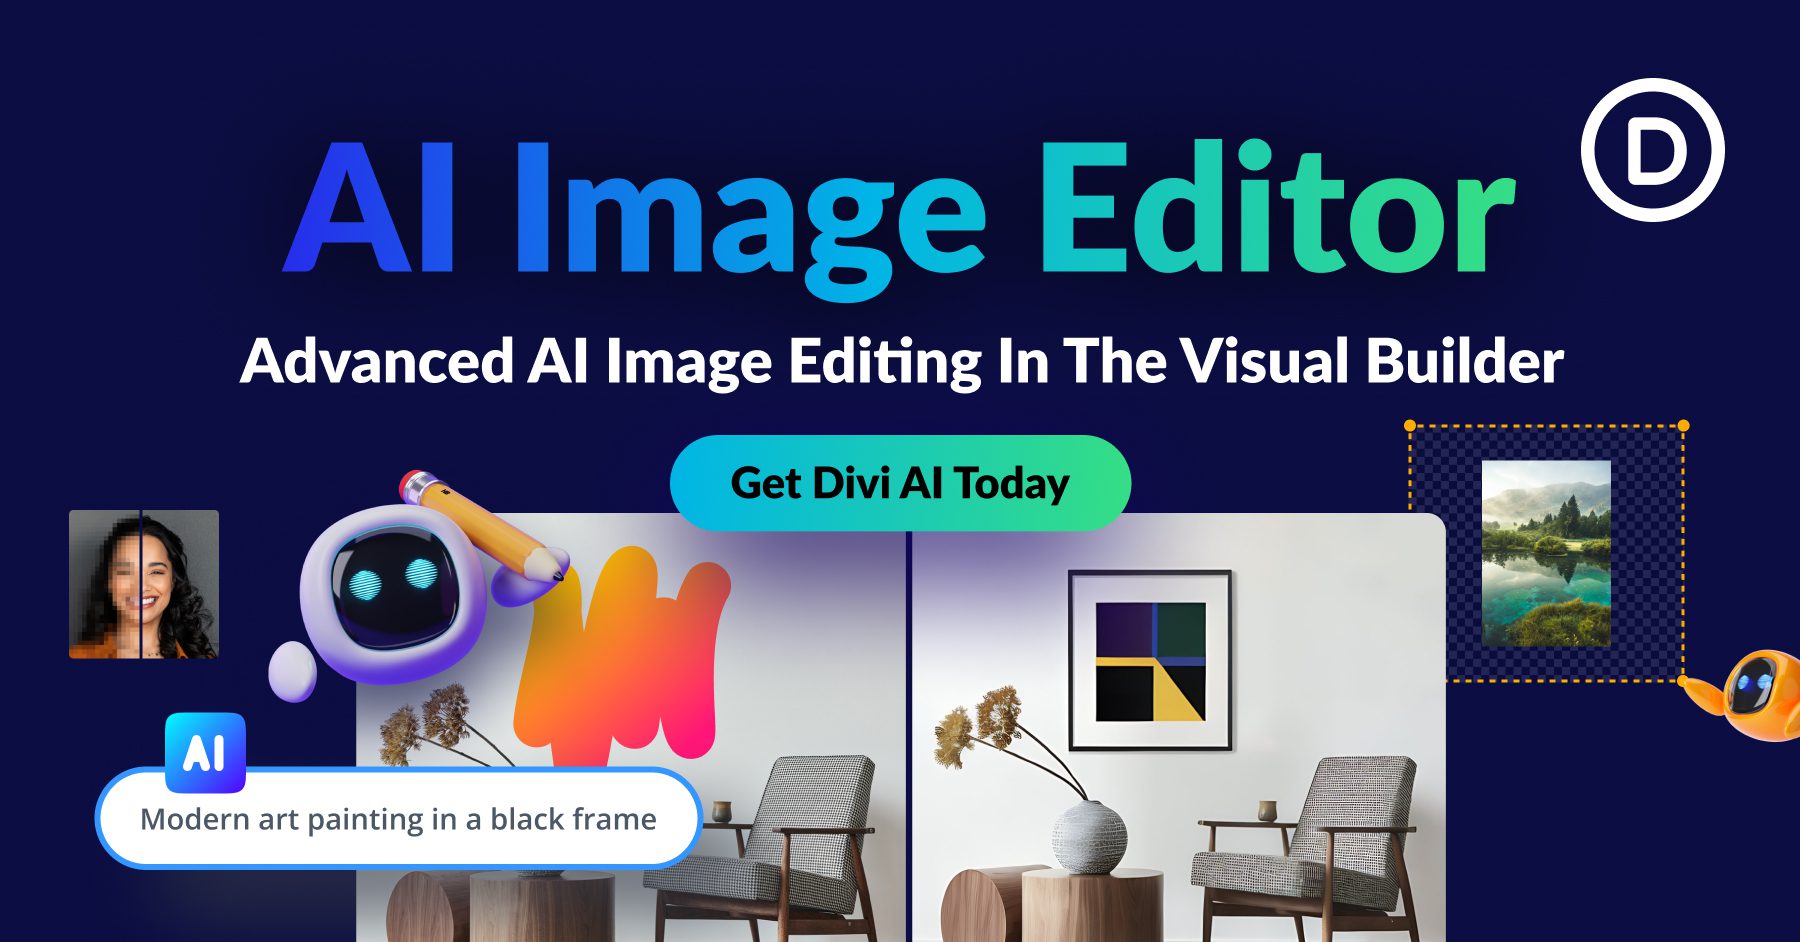 The New Divi AI Image Editor